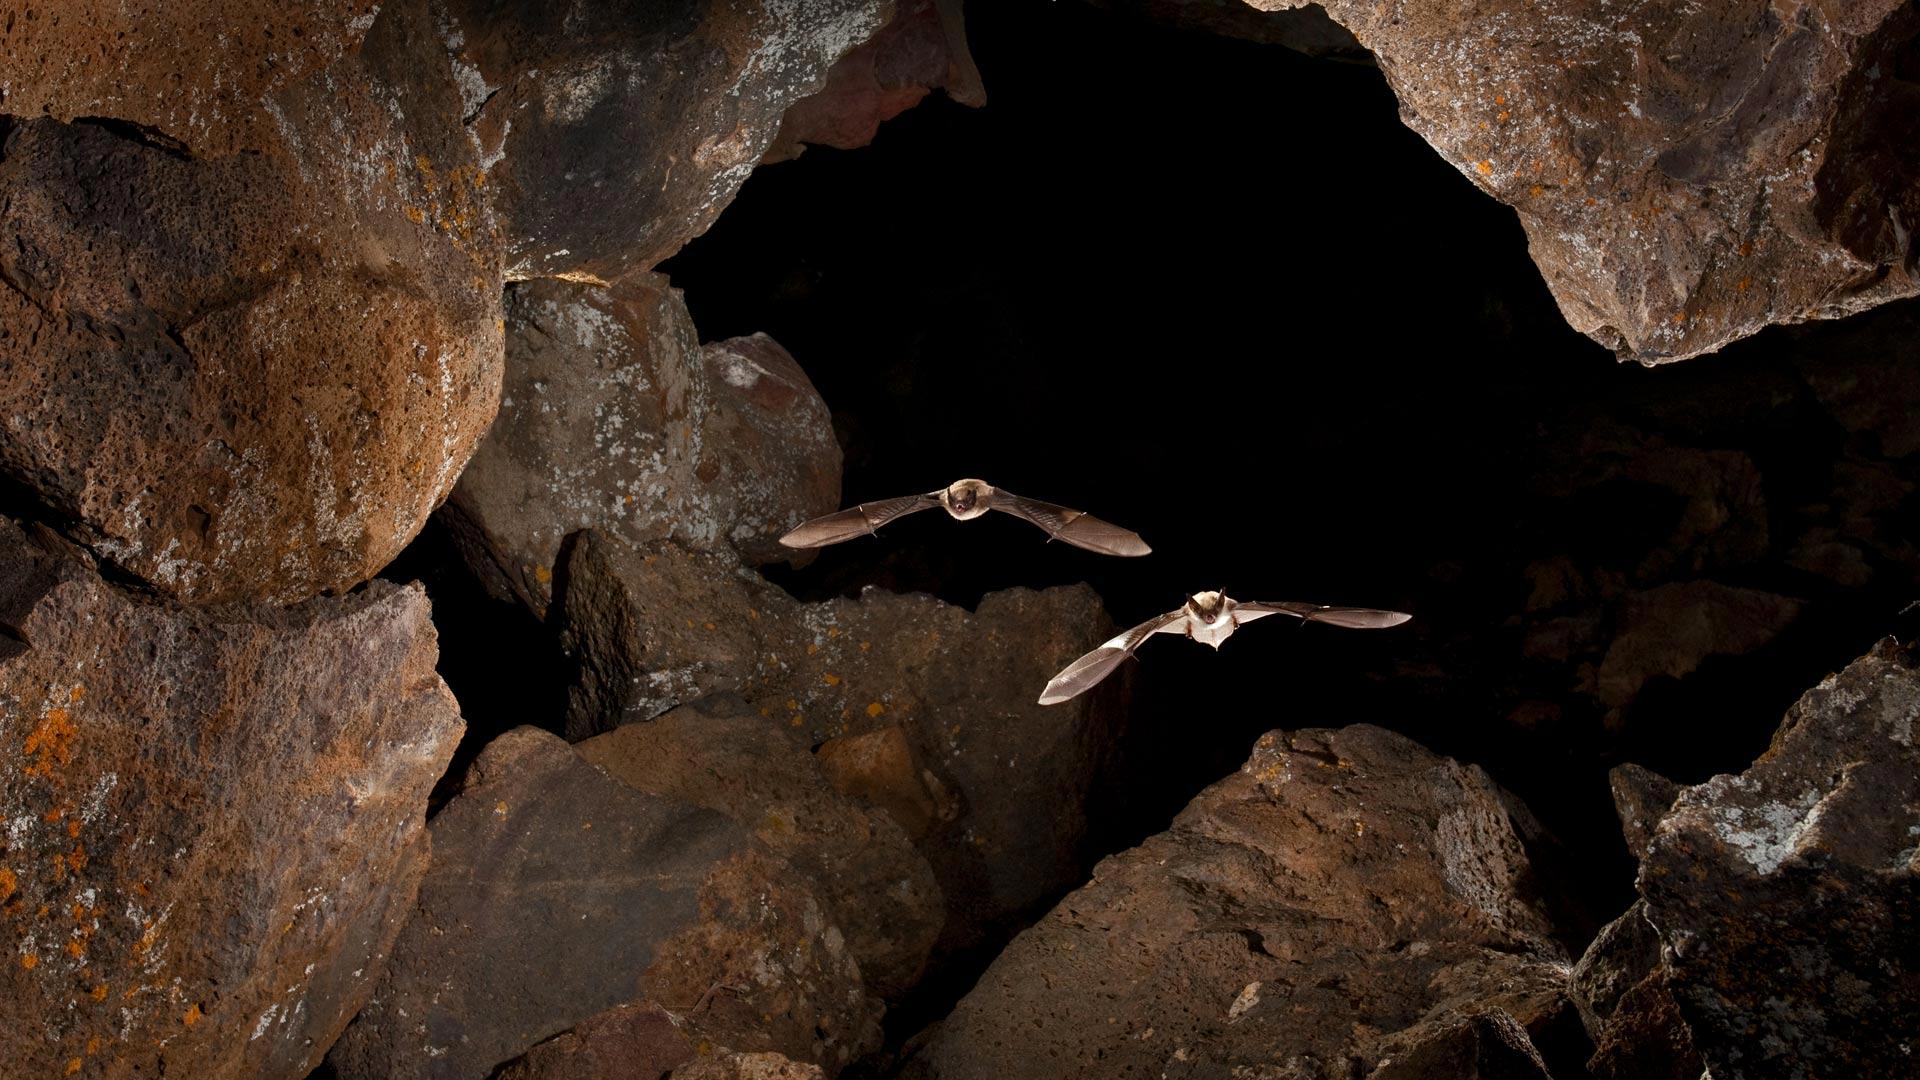 Bat Cave